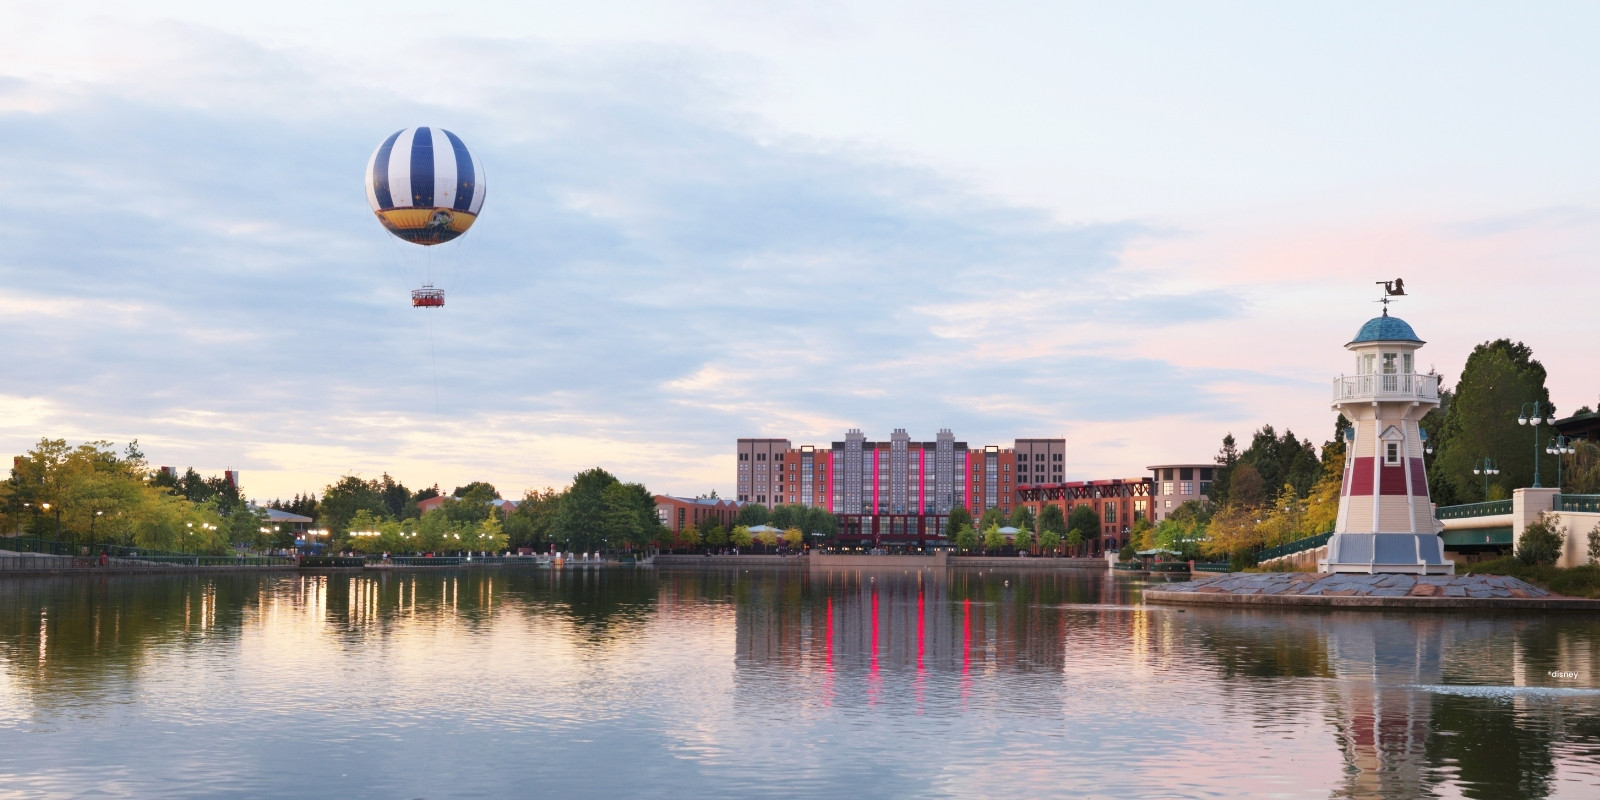 Disney village luchtballon en vuurtoren